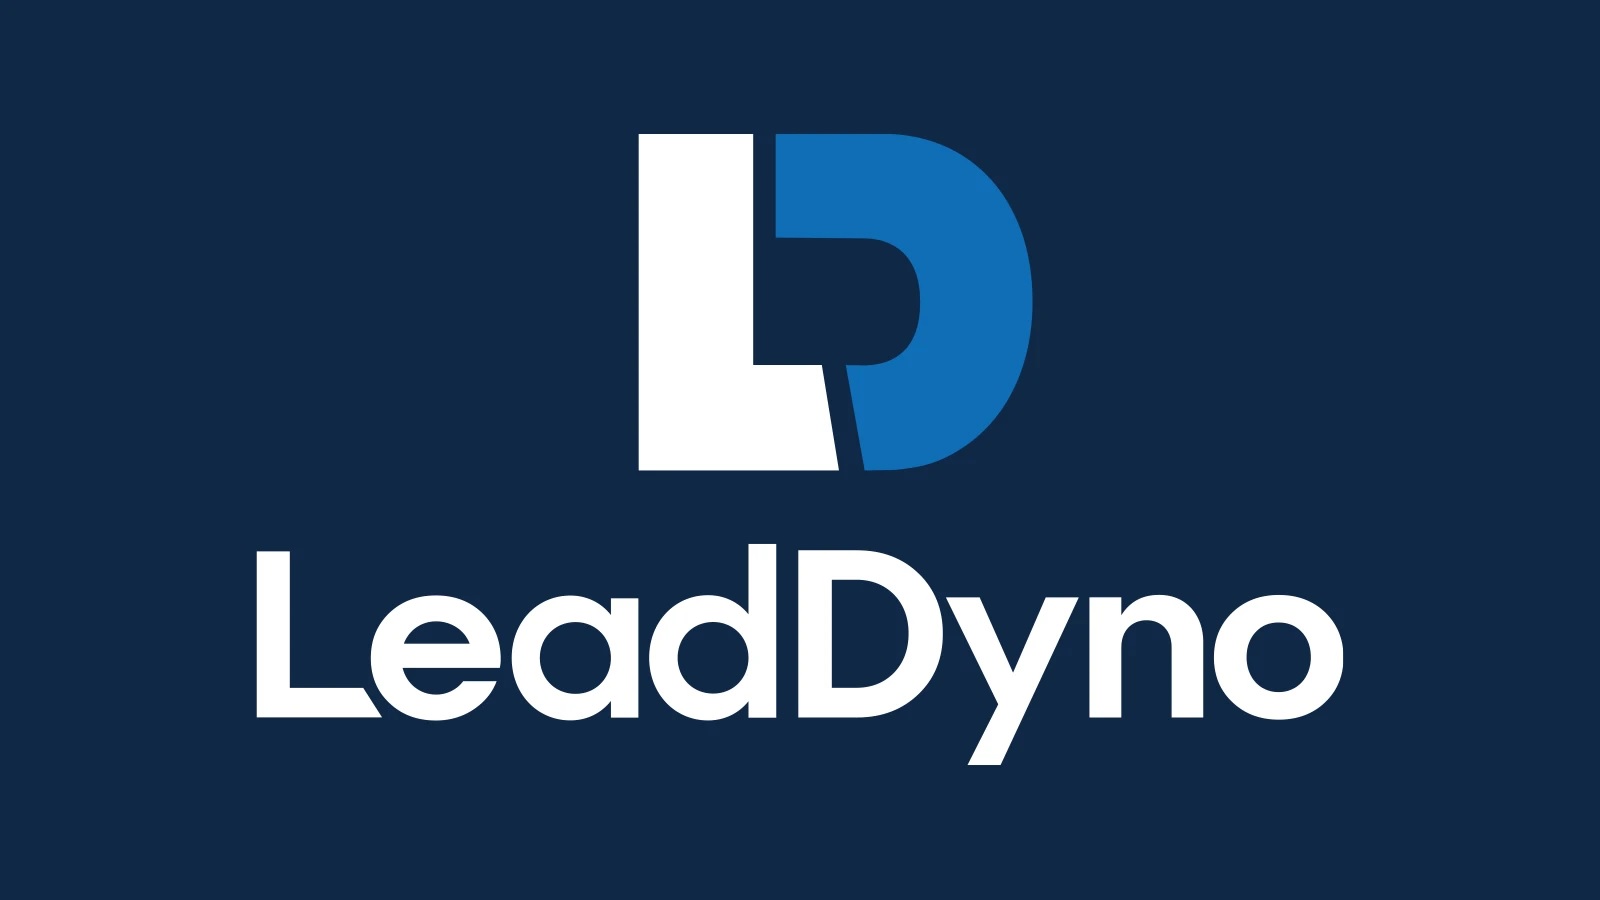 LeadDyno